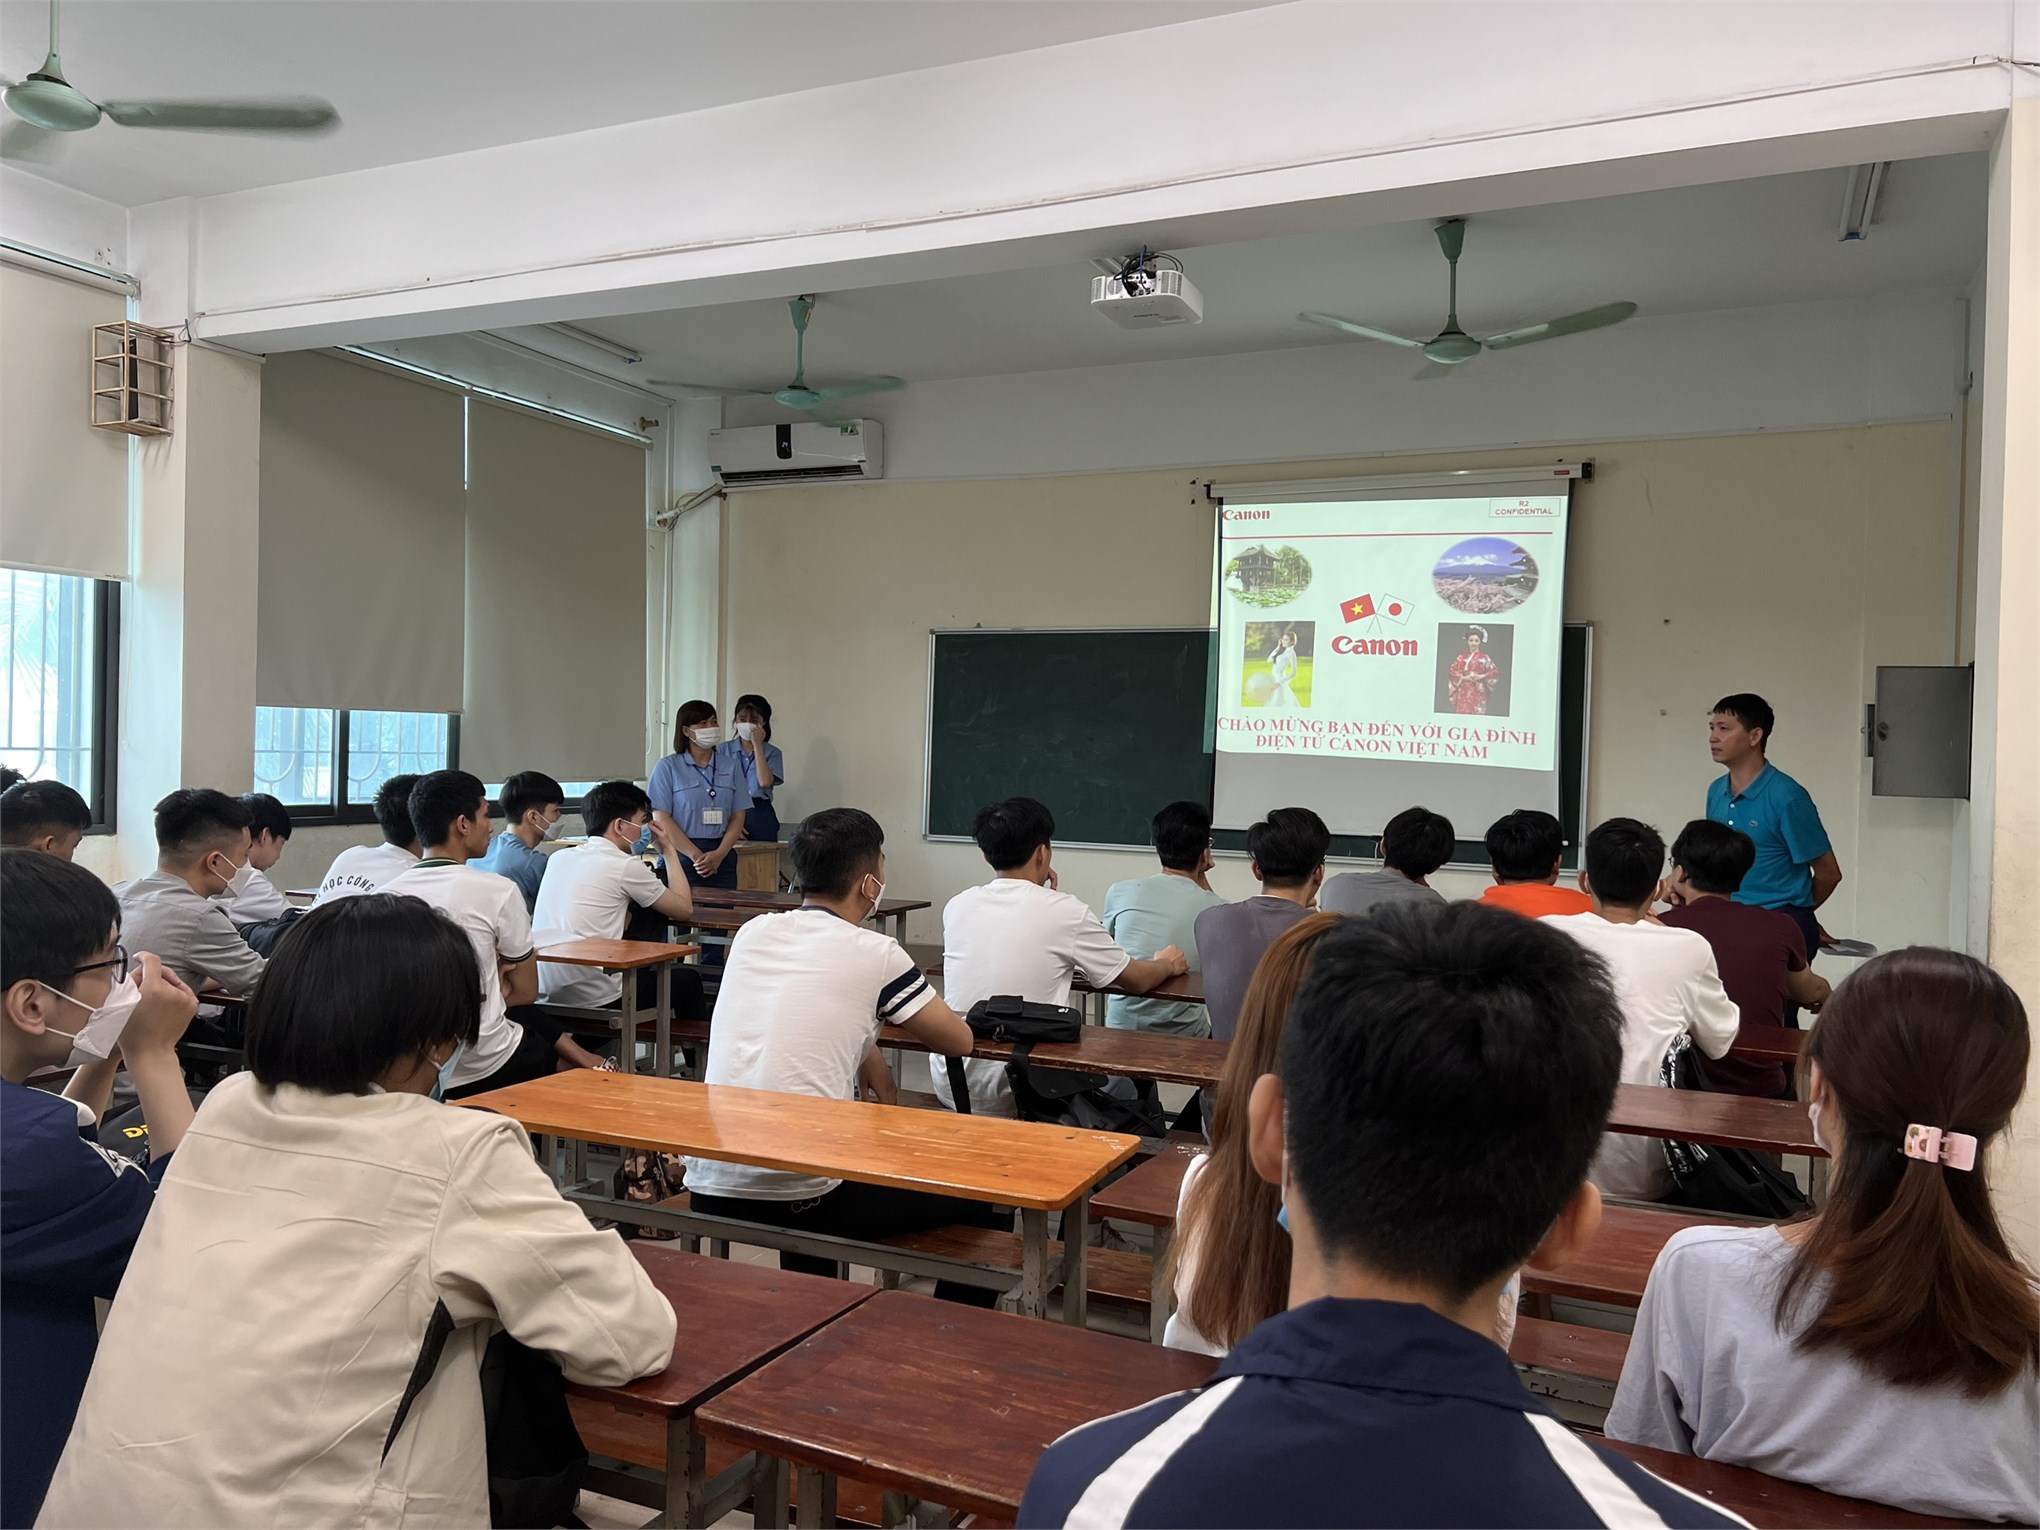 Đa dạng chương trình tham quan trải nghiệm thực tế tại doanh nghiệp cho sinh viên Trường Đại học Công nghiệp Hà Nội